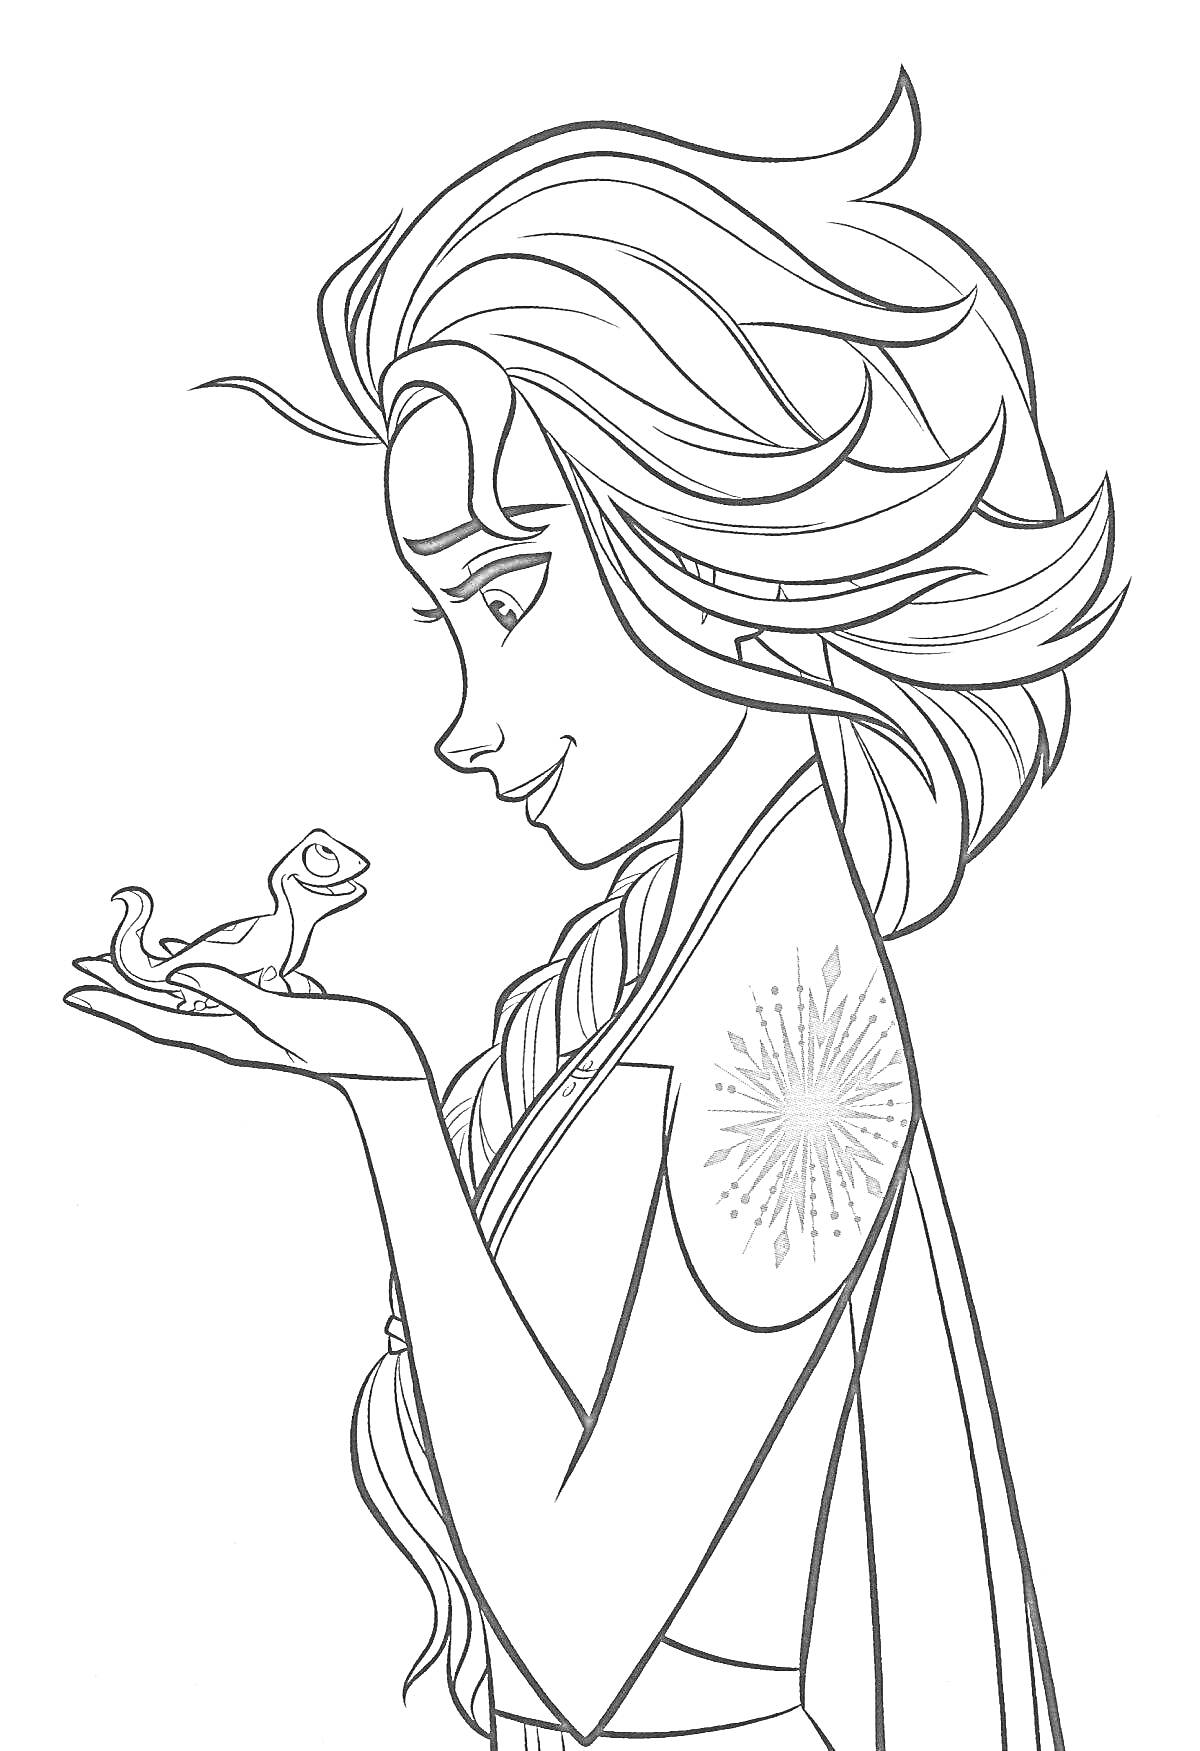 Раскраска Девушка с длинными волосами и волшебной снежинкой на плече держит саламандру на ладони